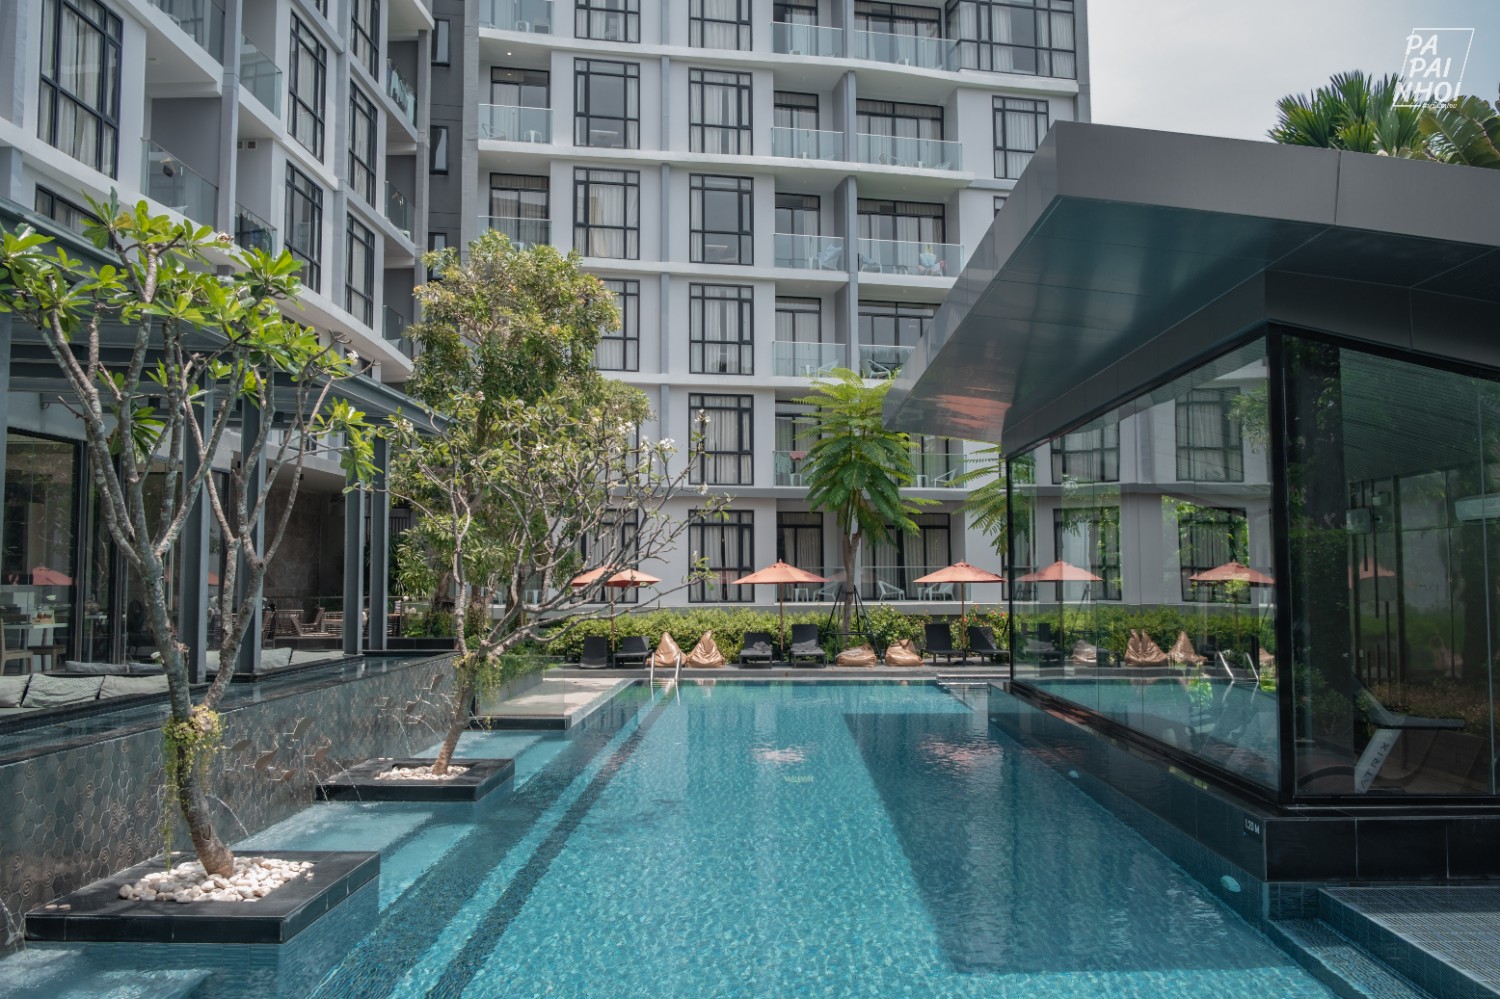 เที่ยวพัทยา นอนโรงแรมหรูใจกลางเมือง ราคาหลักร้อย Arden Hotel and Residence Pattaya - Pantip